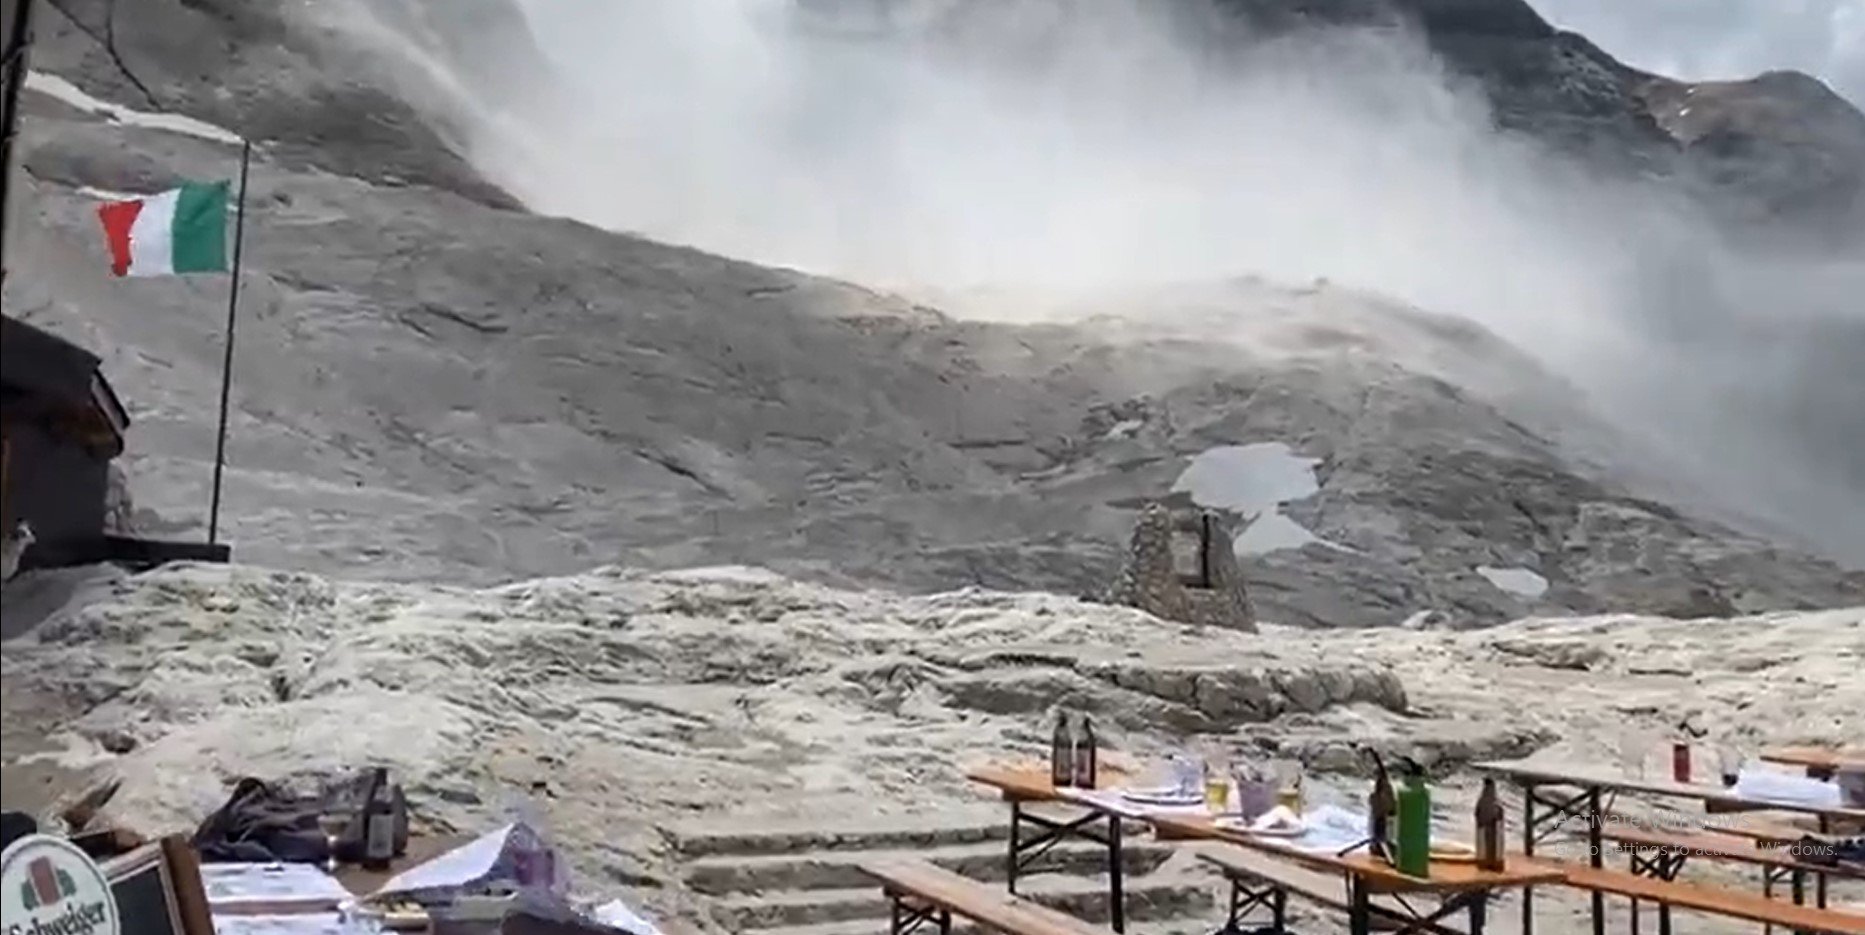  Un gheţar din Alpii Italieni s-a prăbuşit şi cel puţin cinci persoane şi-au pierdut viaţa